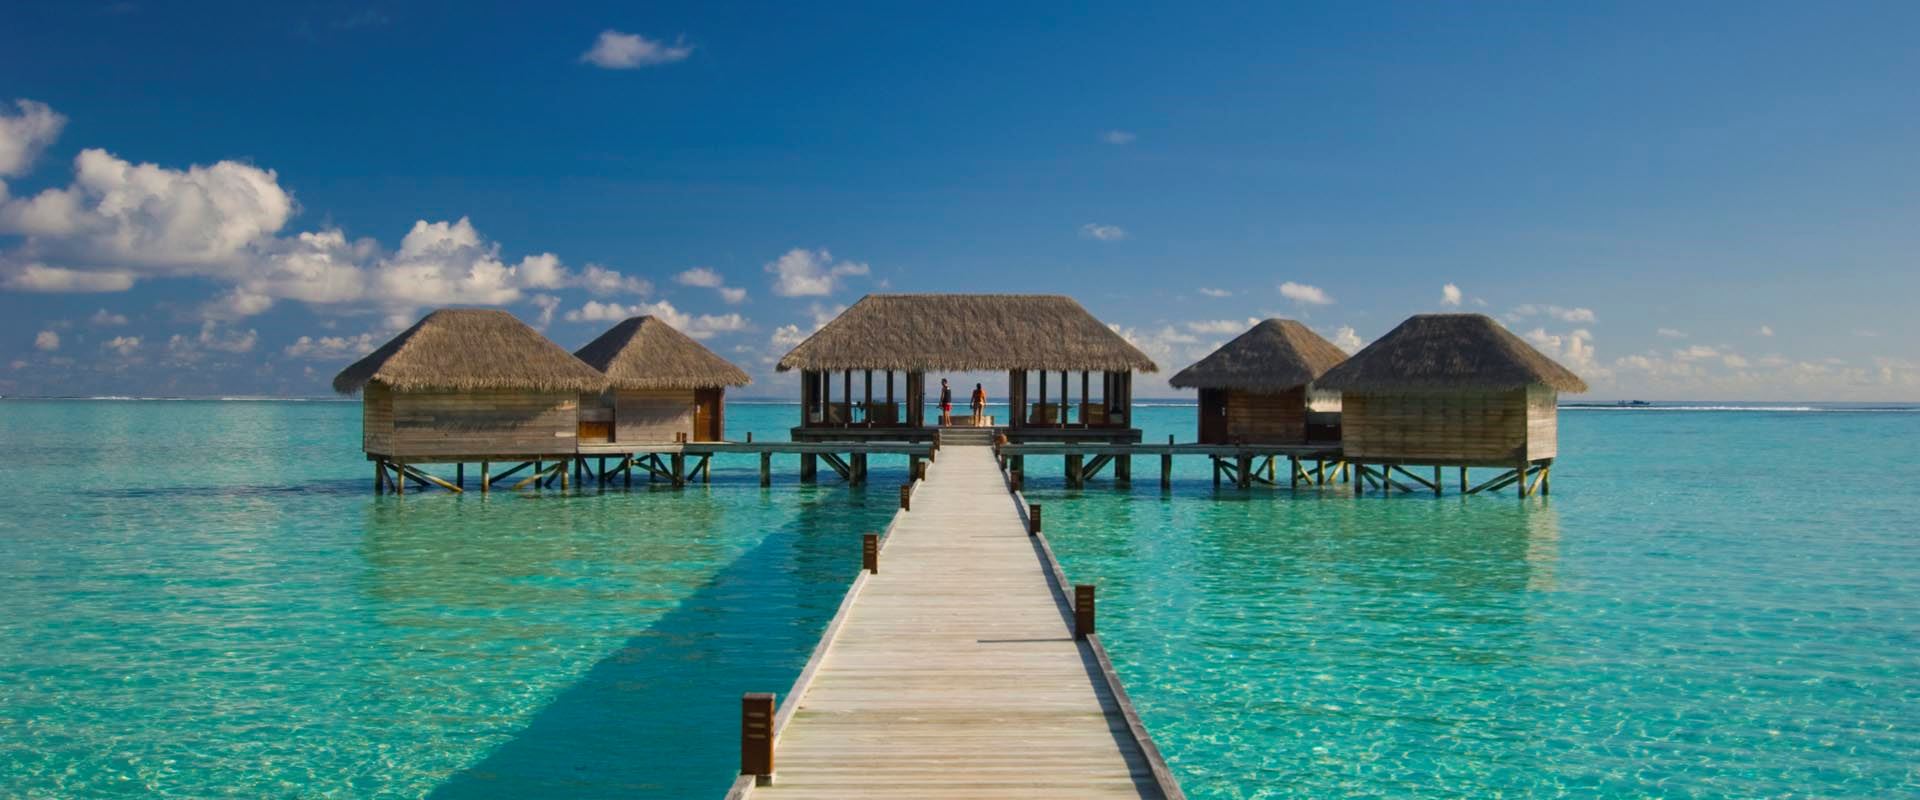 Maldives top 10 resorts